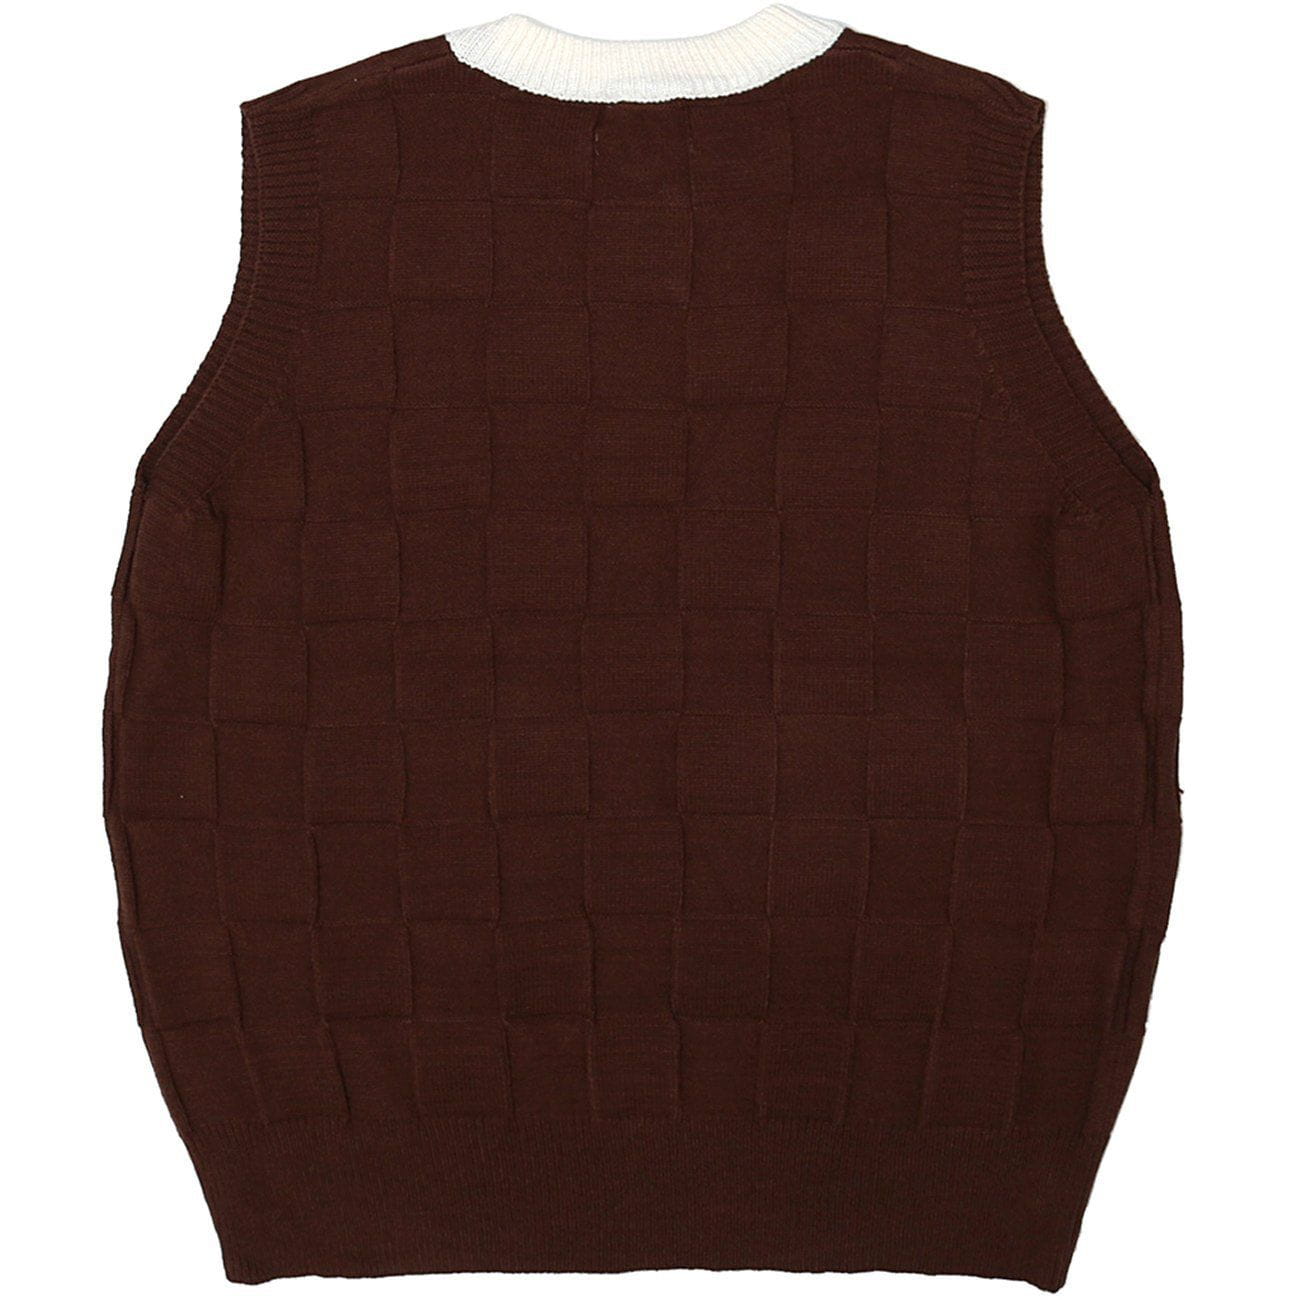 Eprezzy® - Lattice Sweater Vest Streetwear Fashion - eprezzy.com